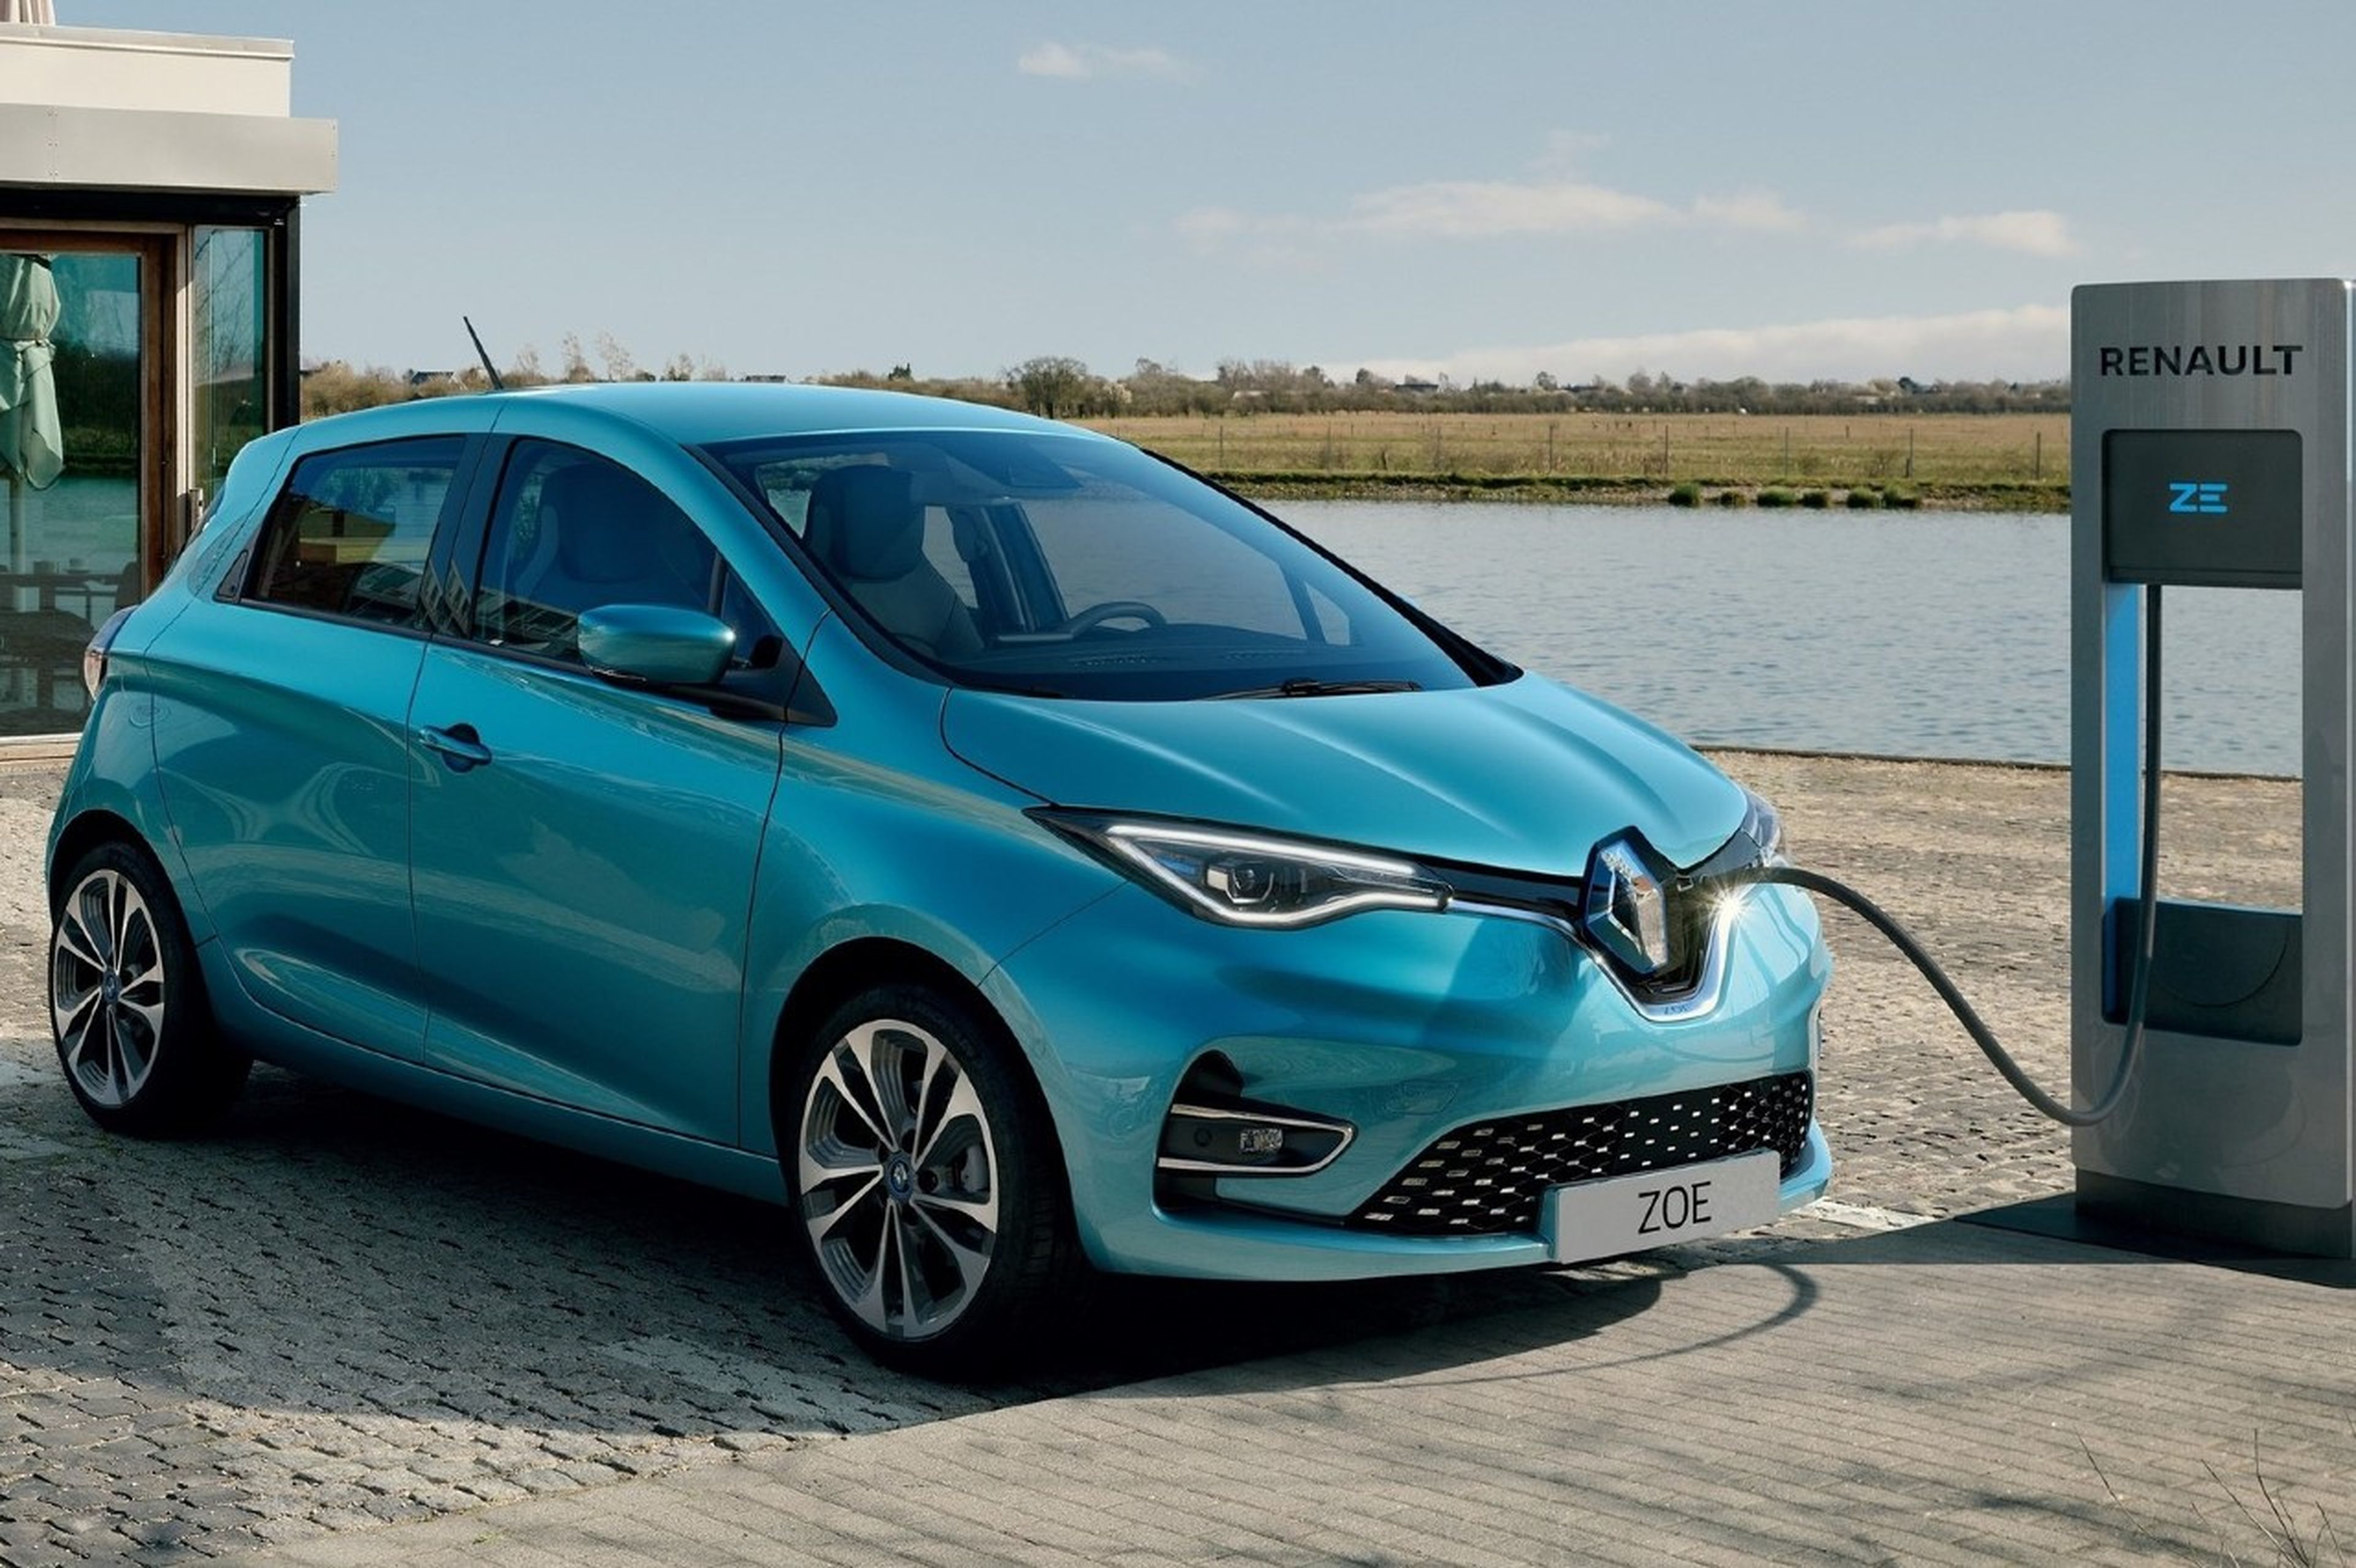 El Renault Zoe es uno de los coches eléctricos más vendidos en Europa